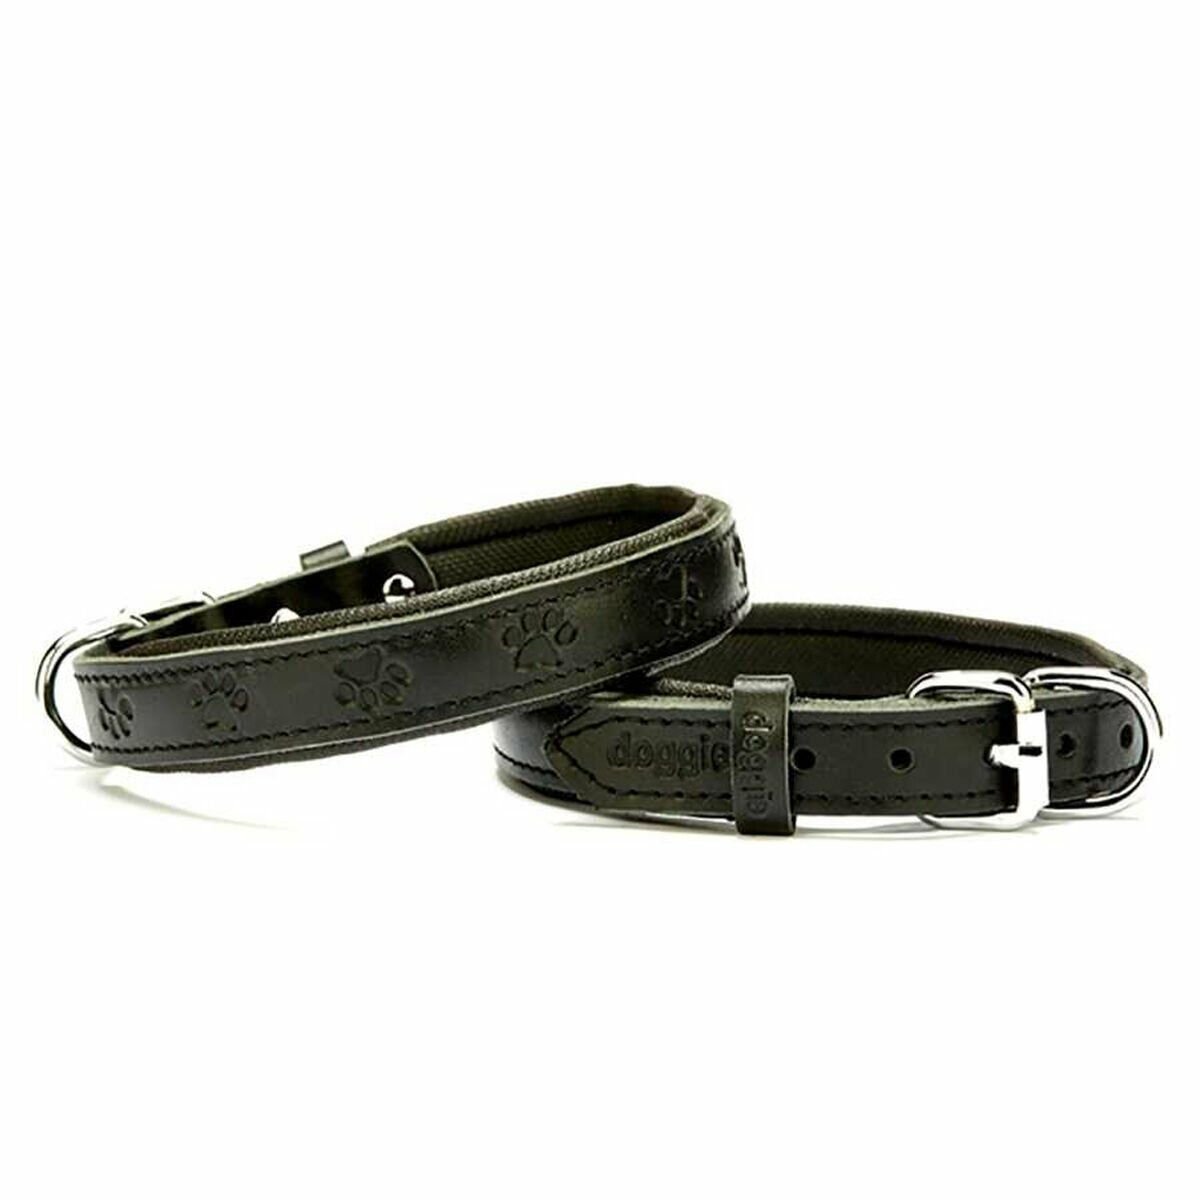 Doggie Comfort Deri Boyun Tasması Siyah 2 x 30-35 cm Small